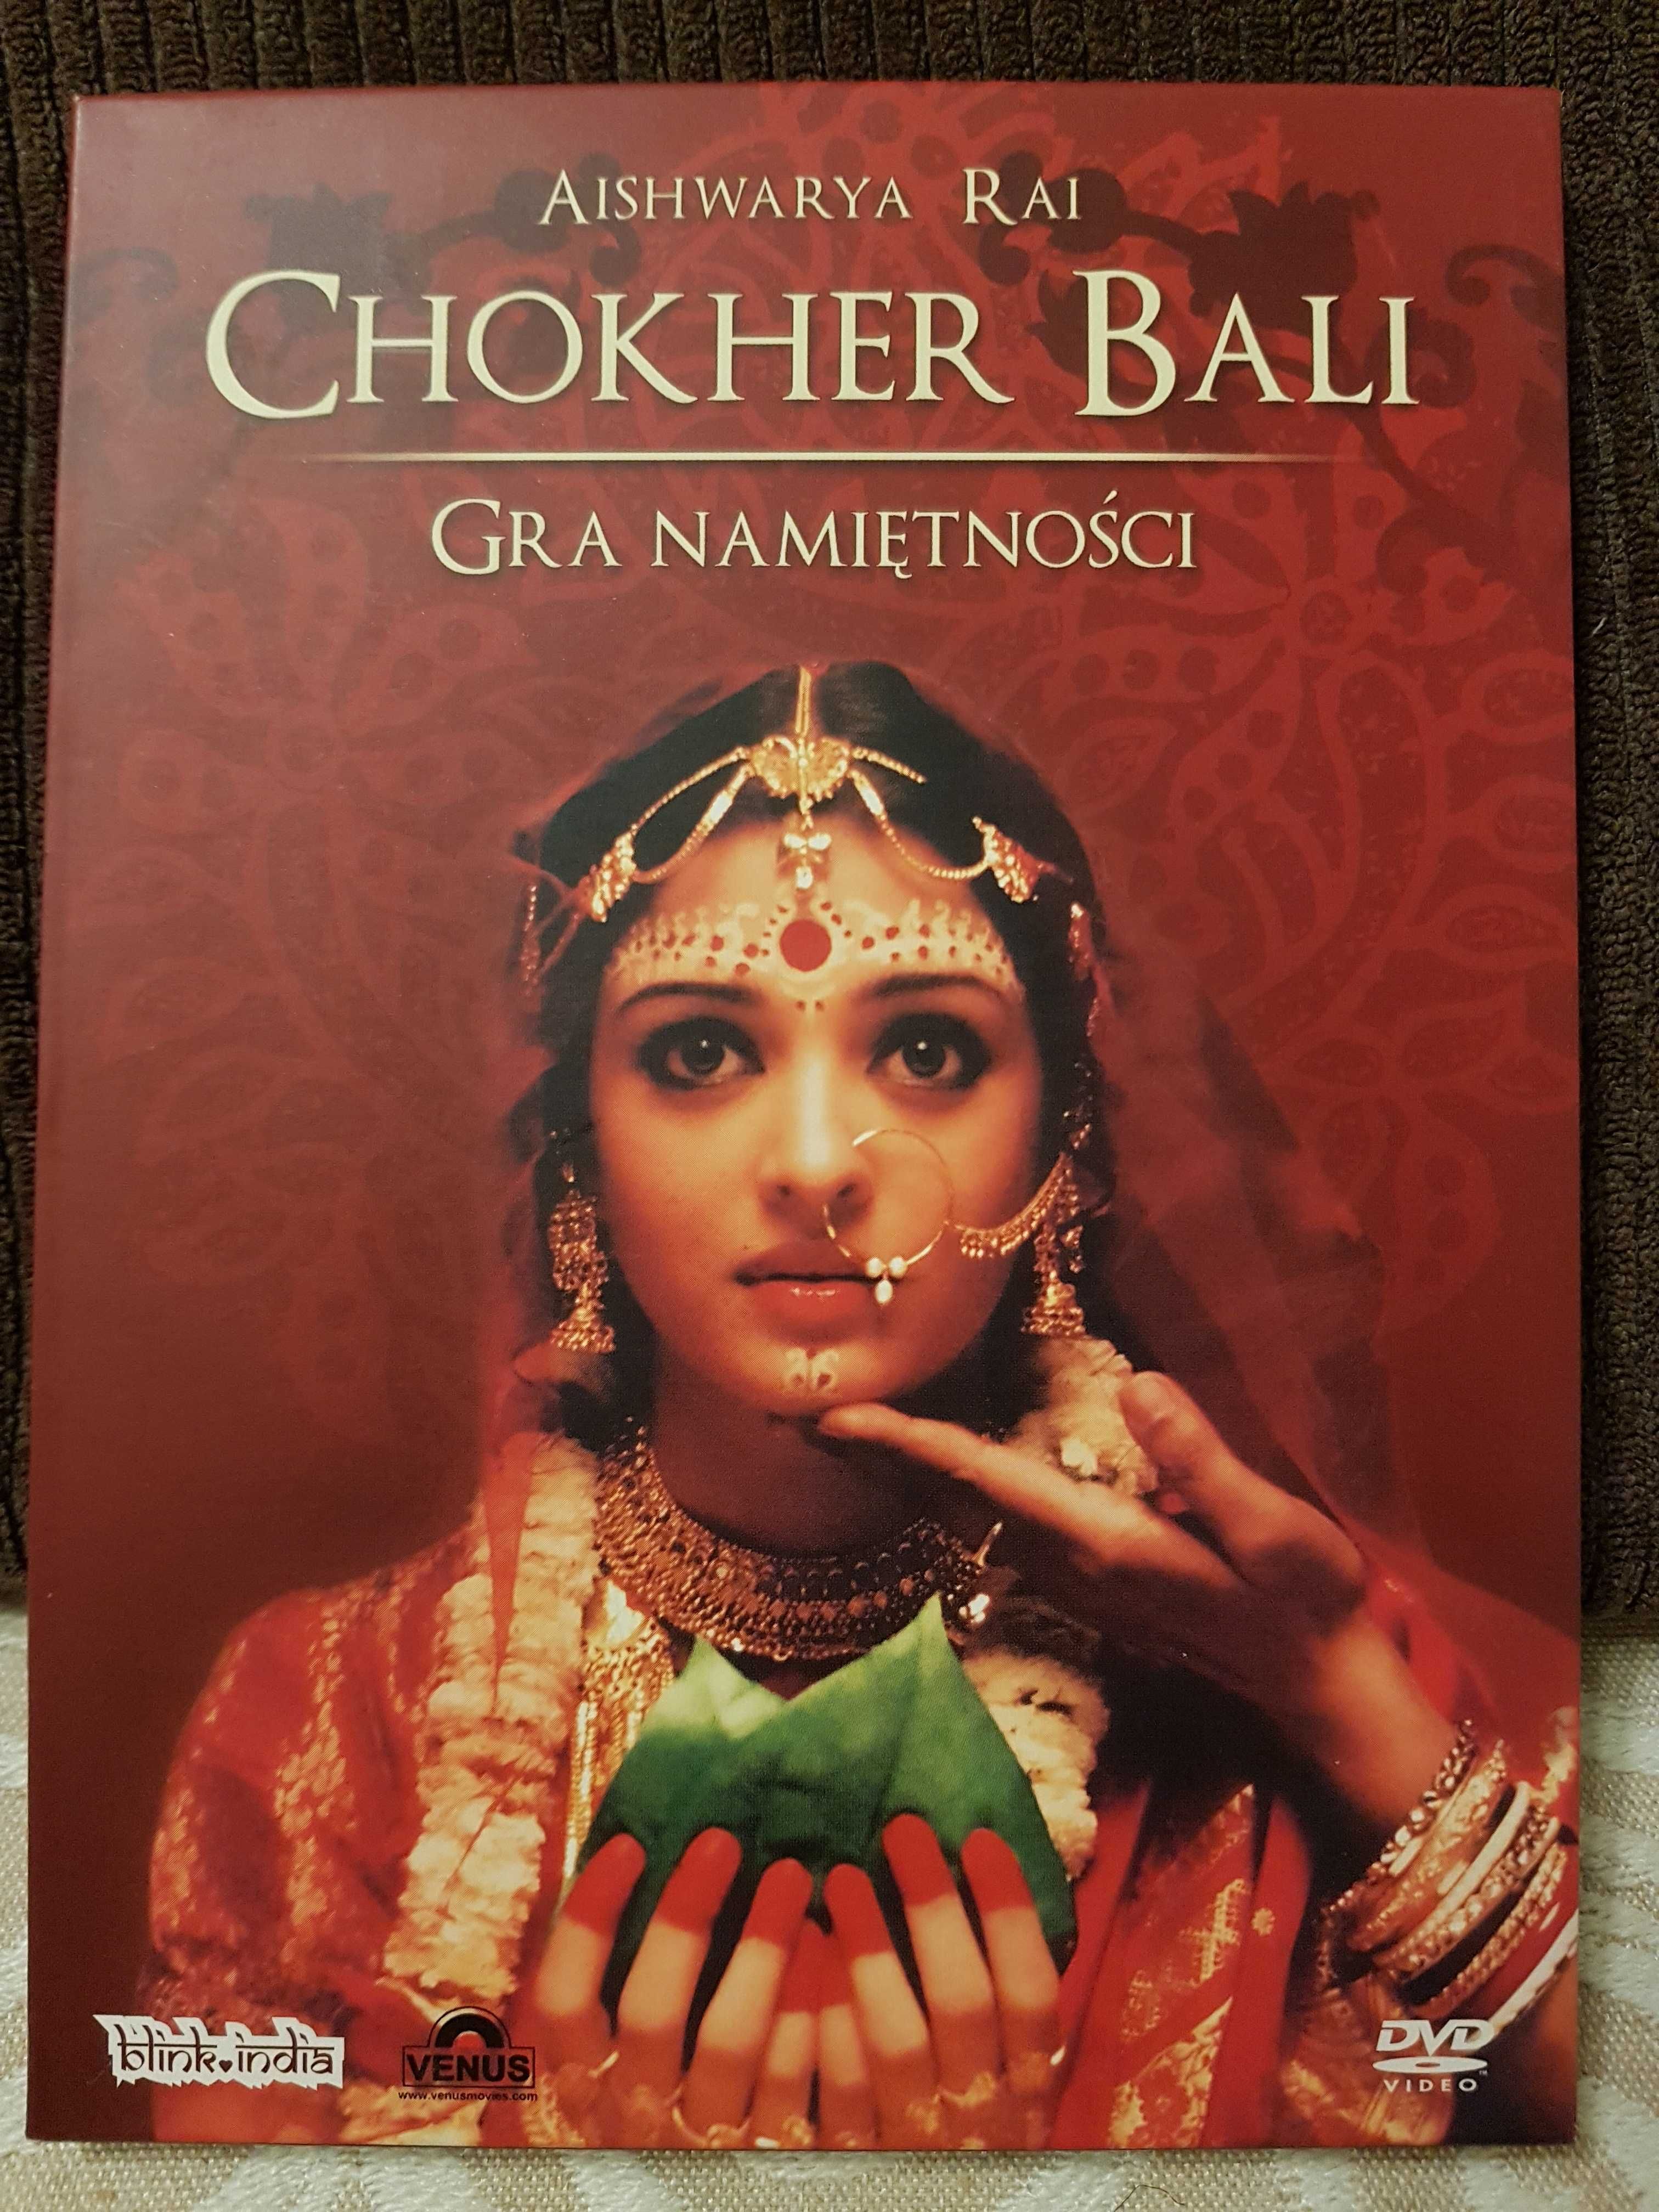 Sprzedam DVD z filmem Bollywood "Chokher Bali".